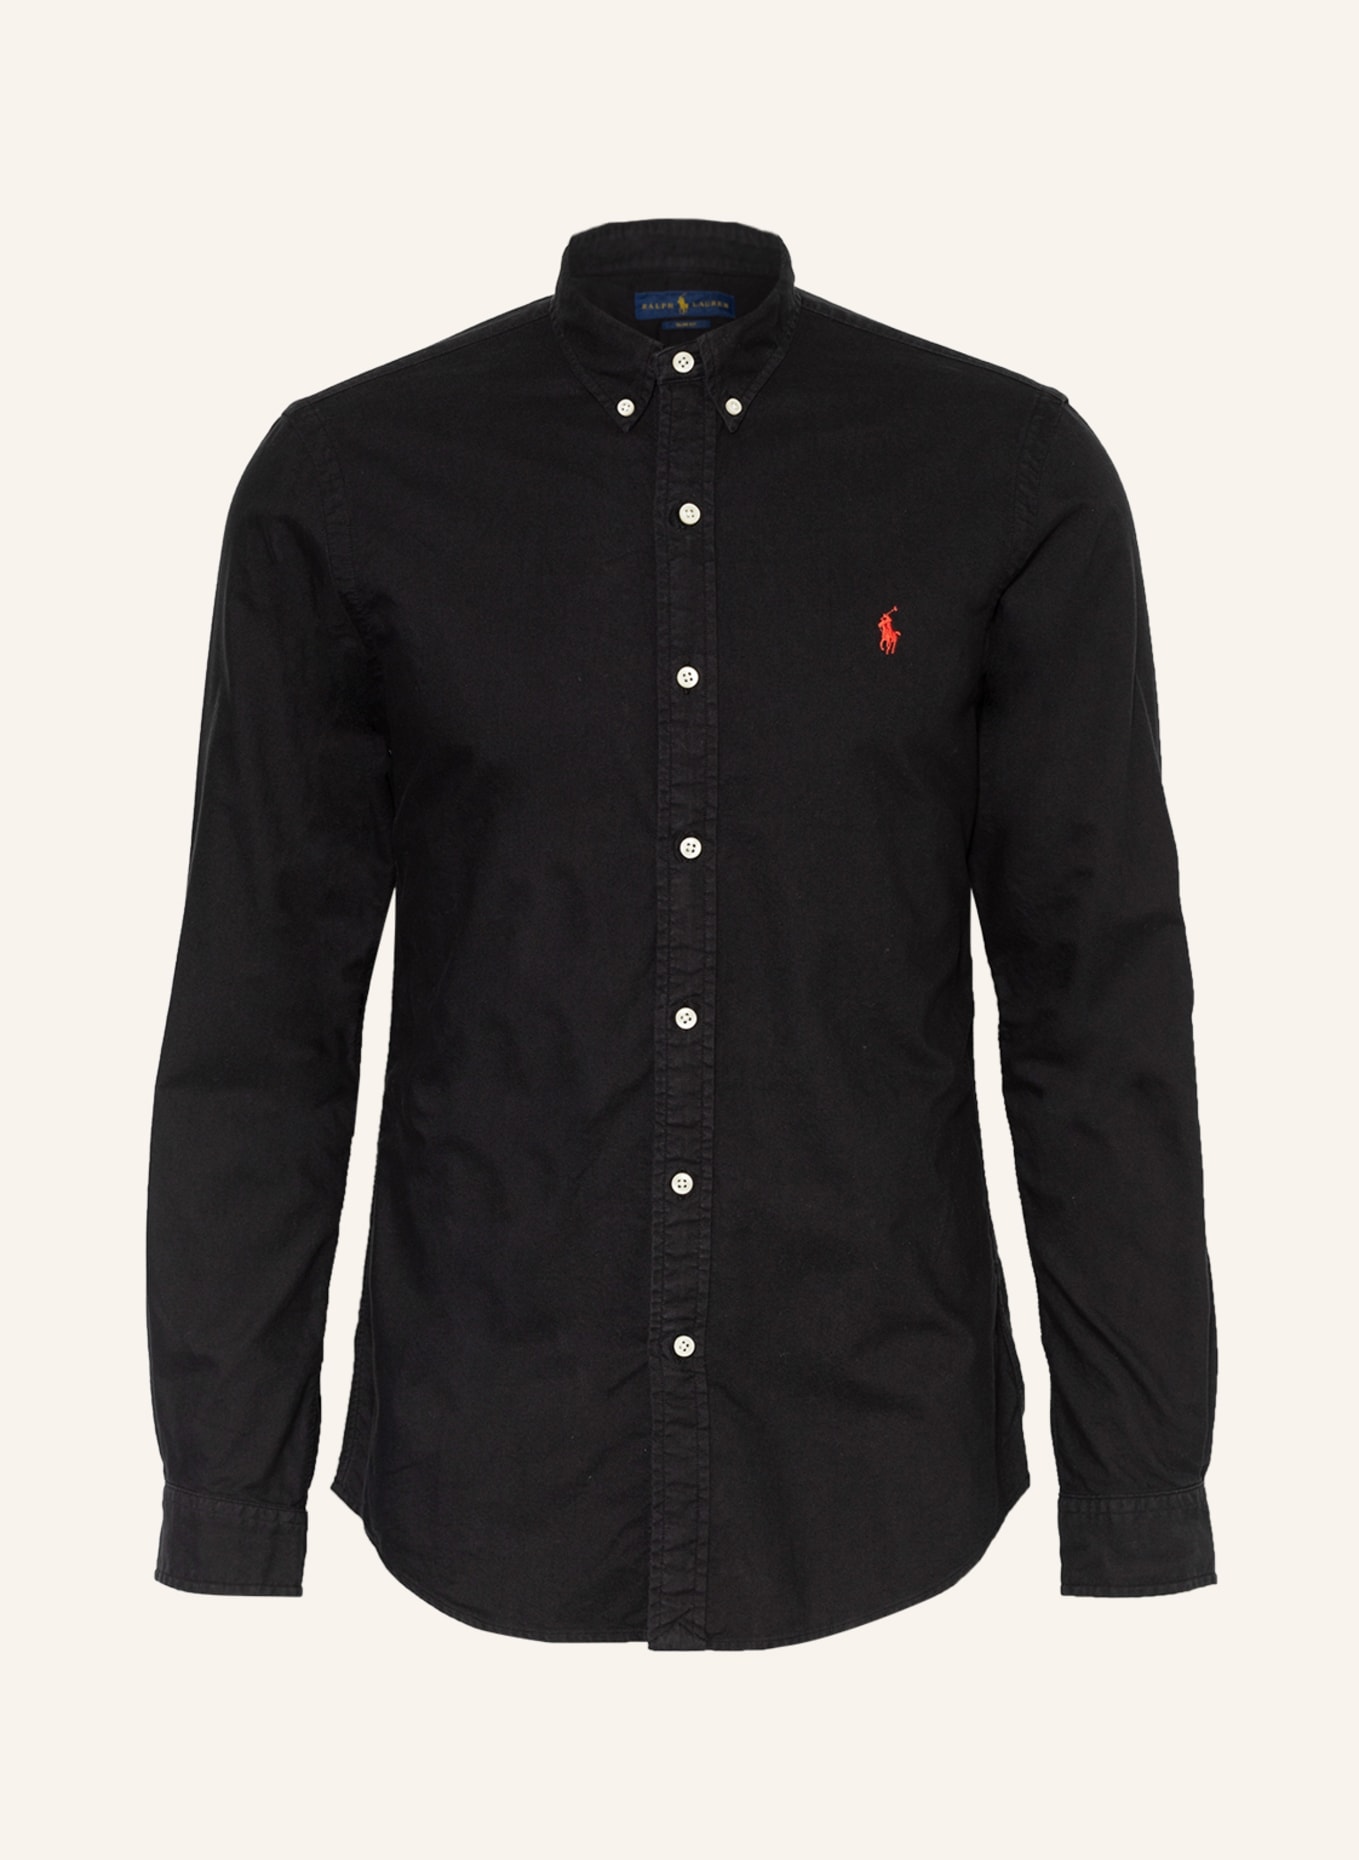 POLO RALPH LAUREN Oxford shirt slim fit, Color: BLACK (Image 1)